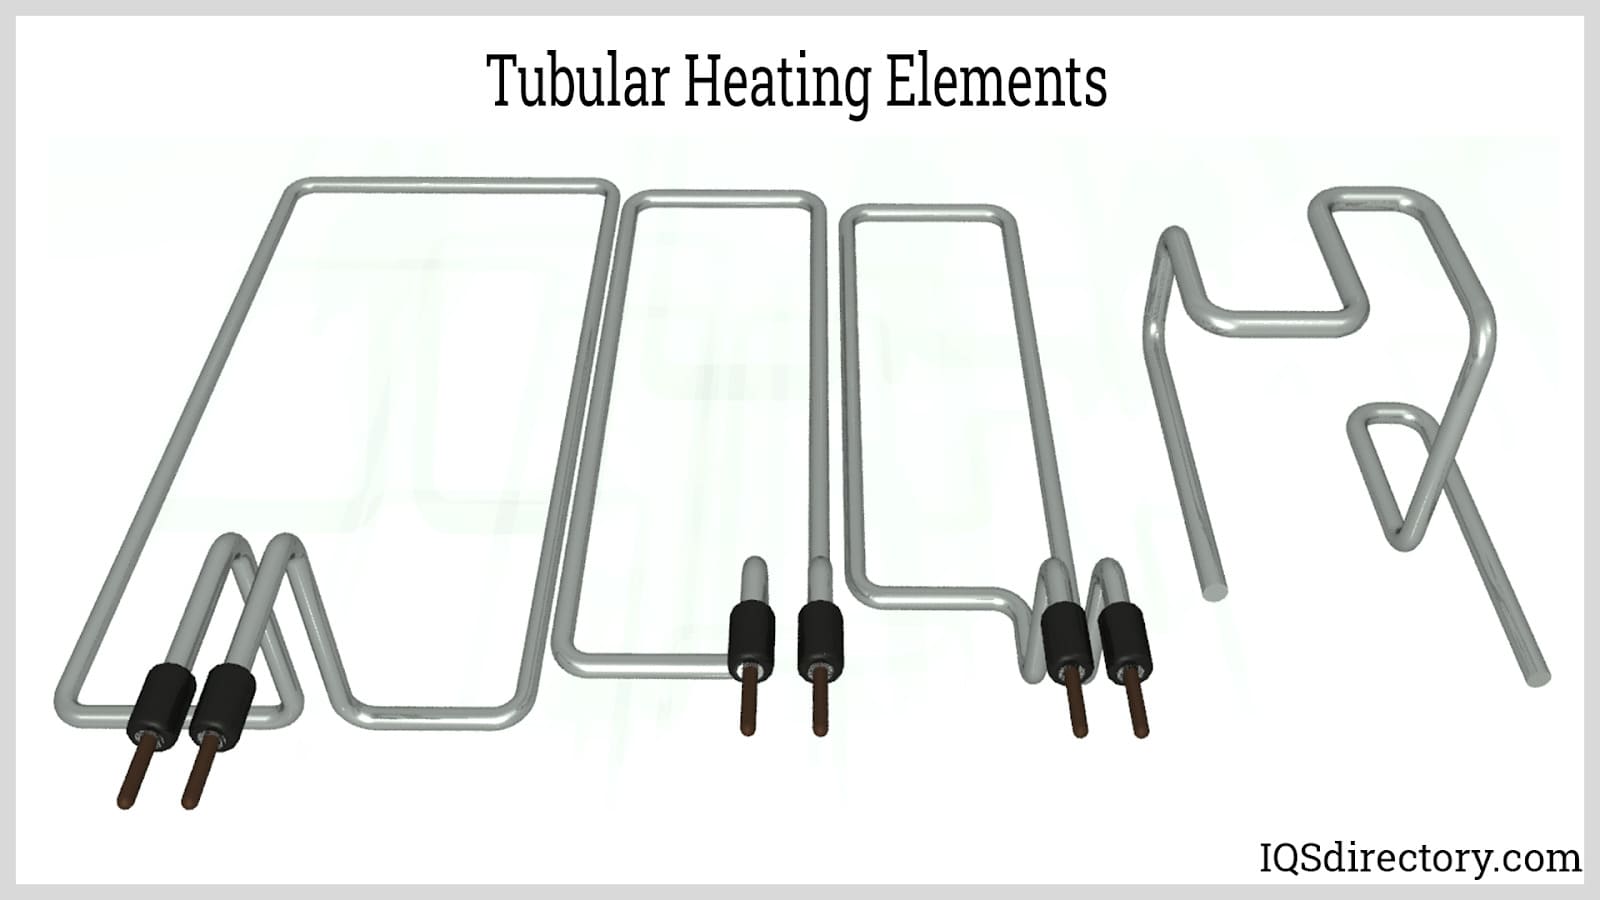 Tubular Heating Elements